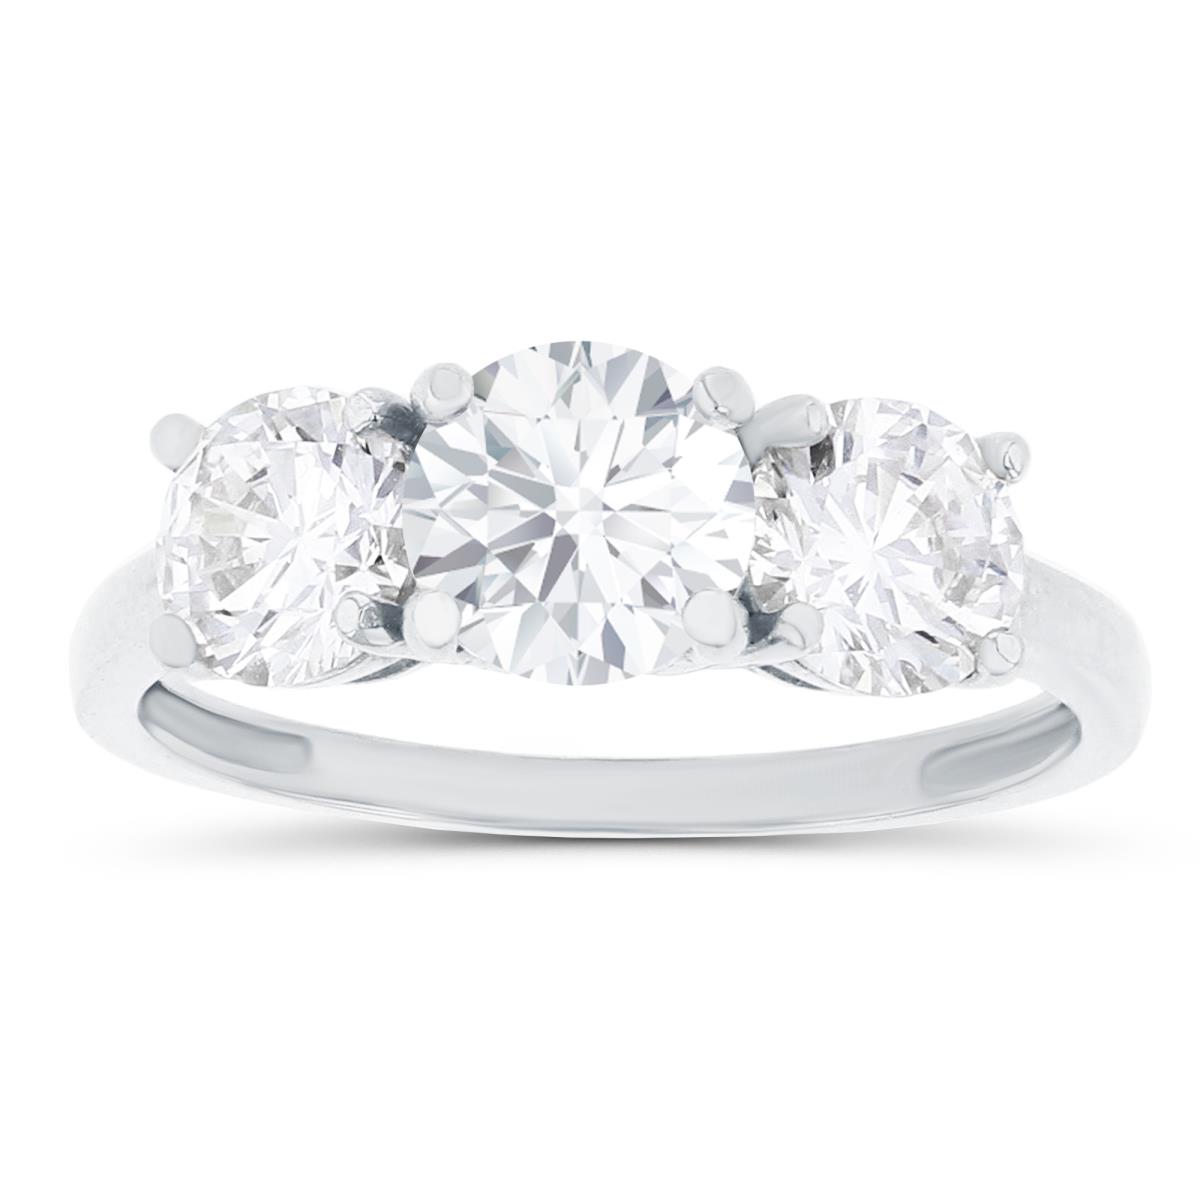 14K White Gold 3-Stones Created White Sapphire Anniversary Ring